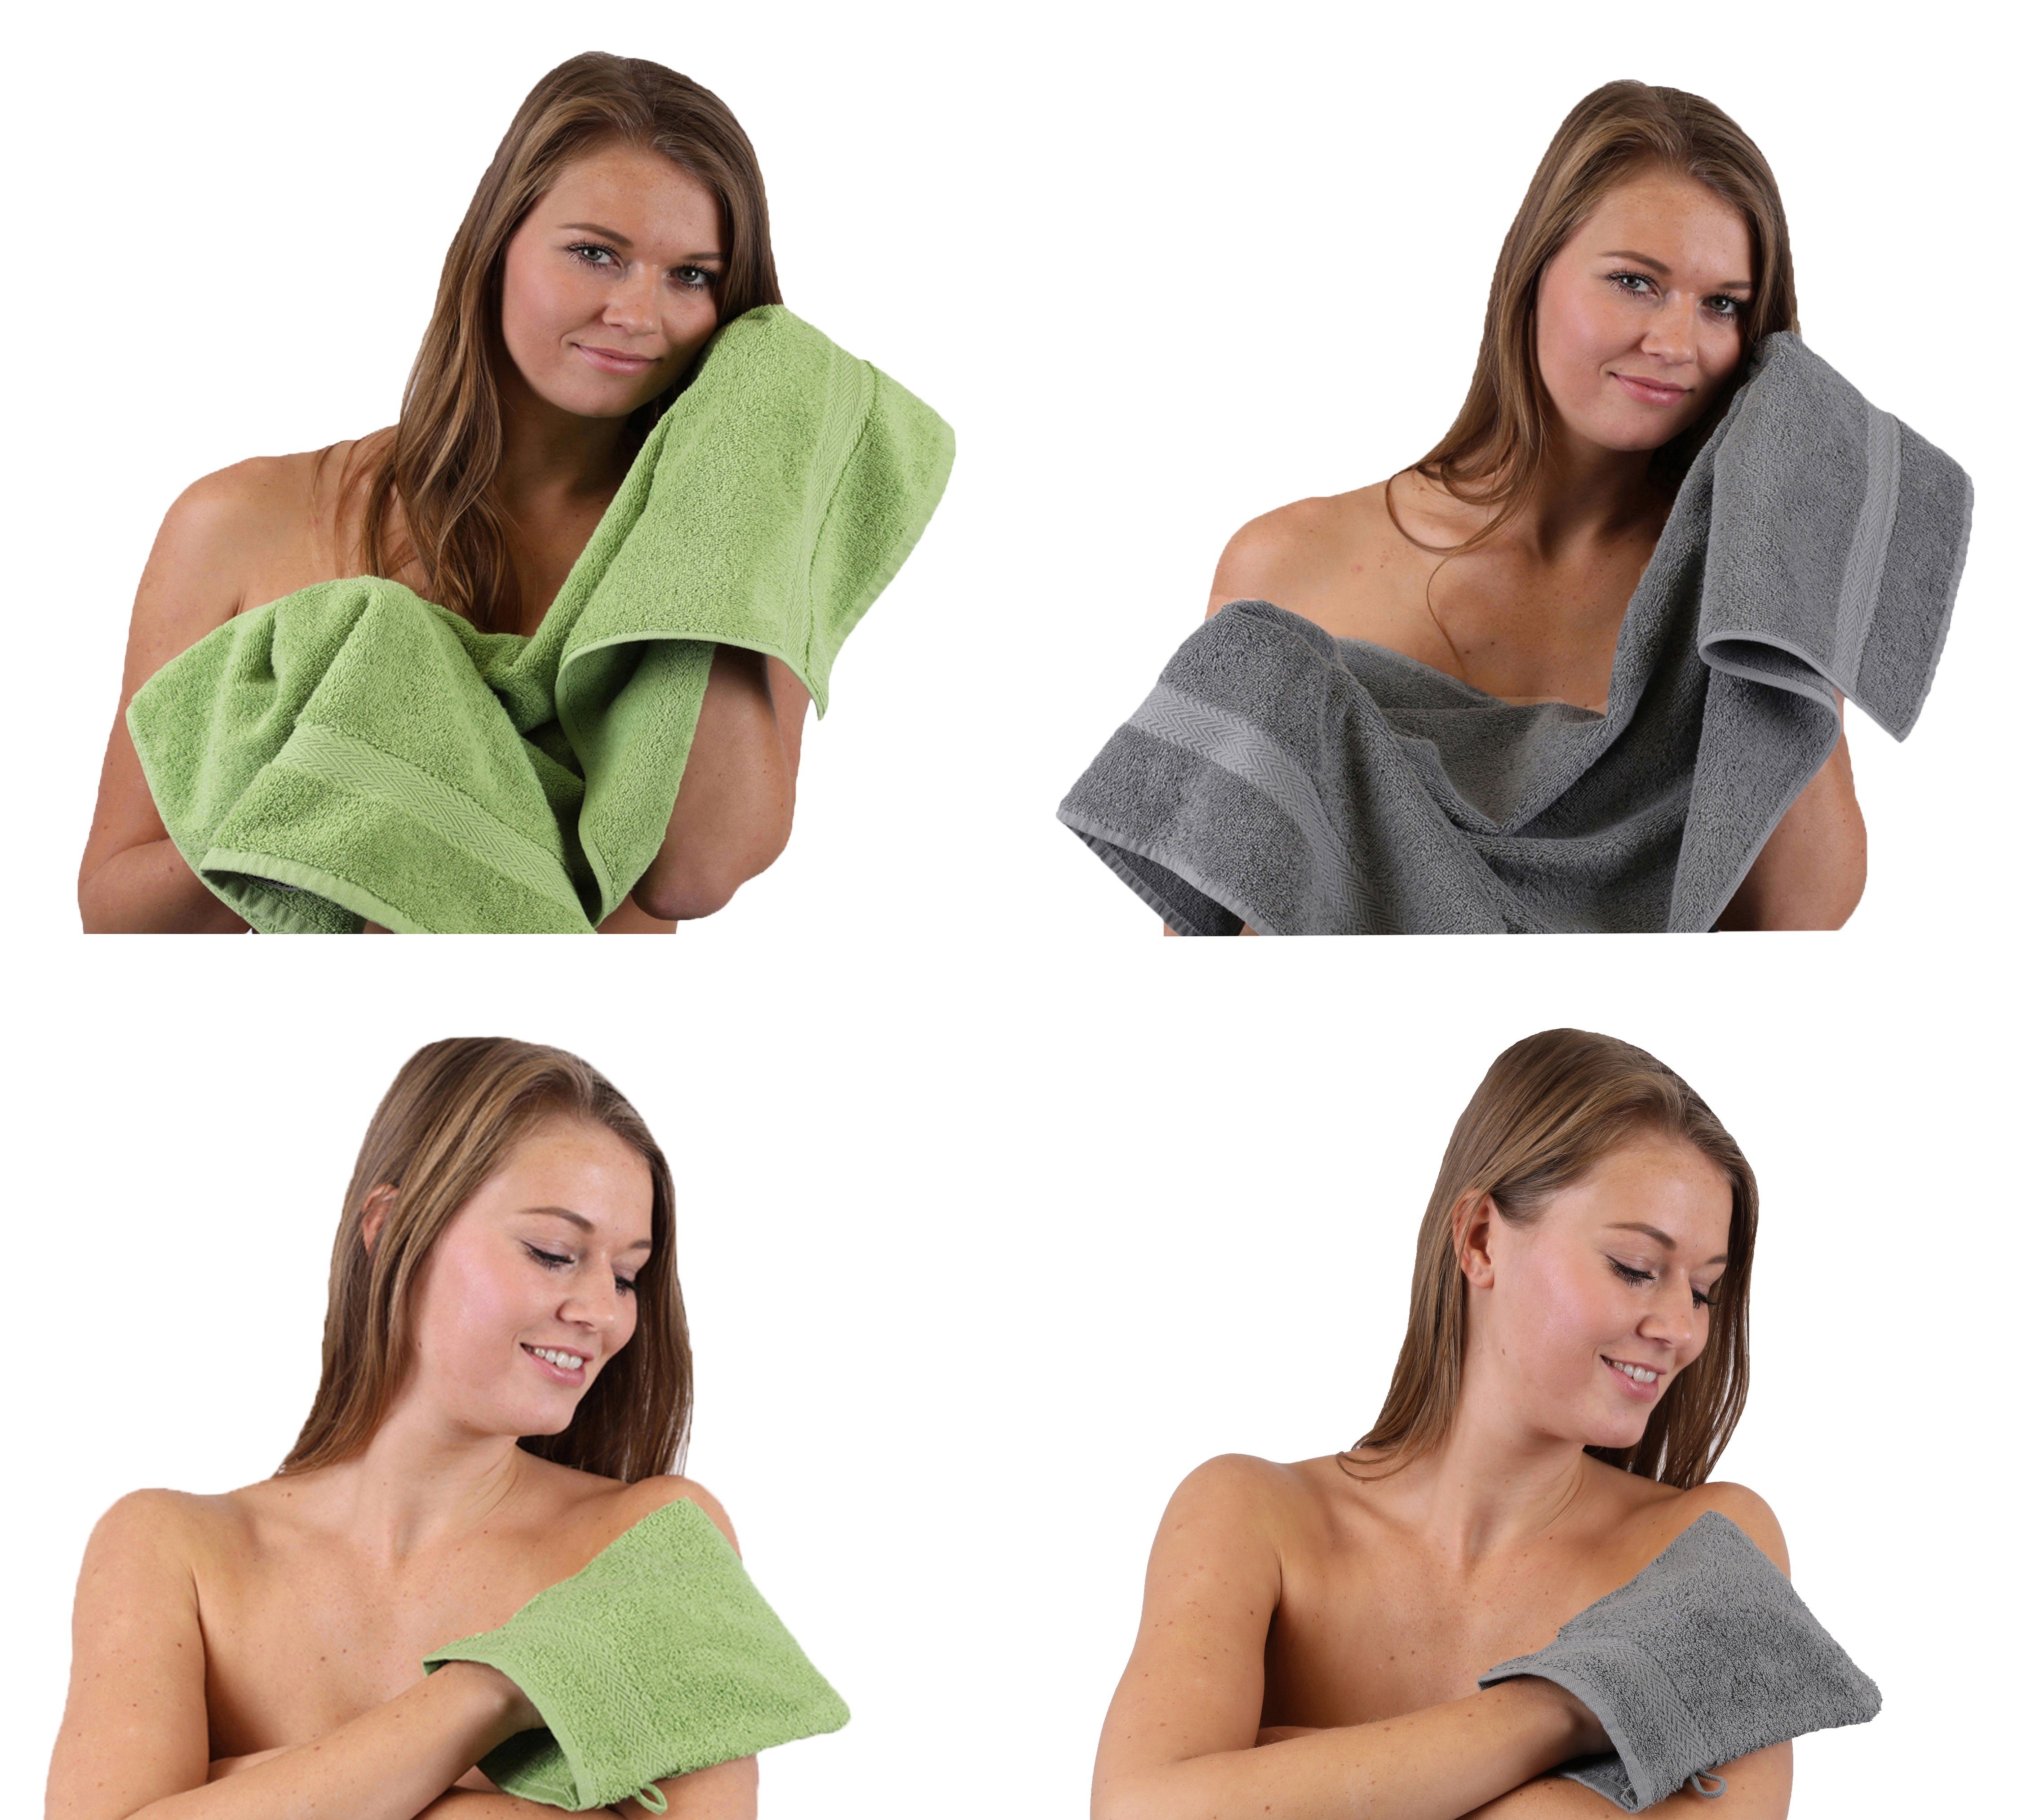 100% Handtücher Baumwolle Pack Handtuch 4 Betz TLG. Set Waschhandschuhe, 100% Handtuch - anthrazit Happy Baumwolle apfelgrün Set 2 grau 2